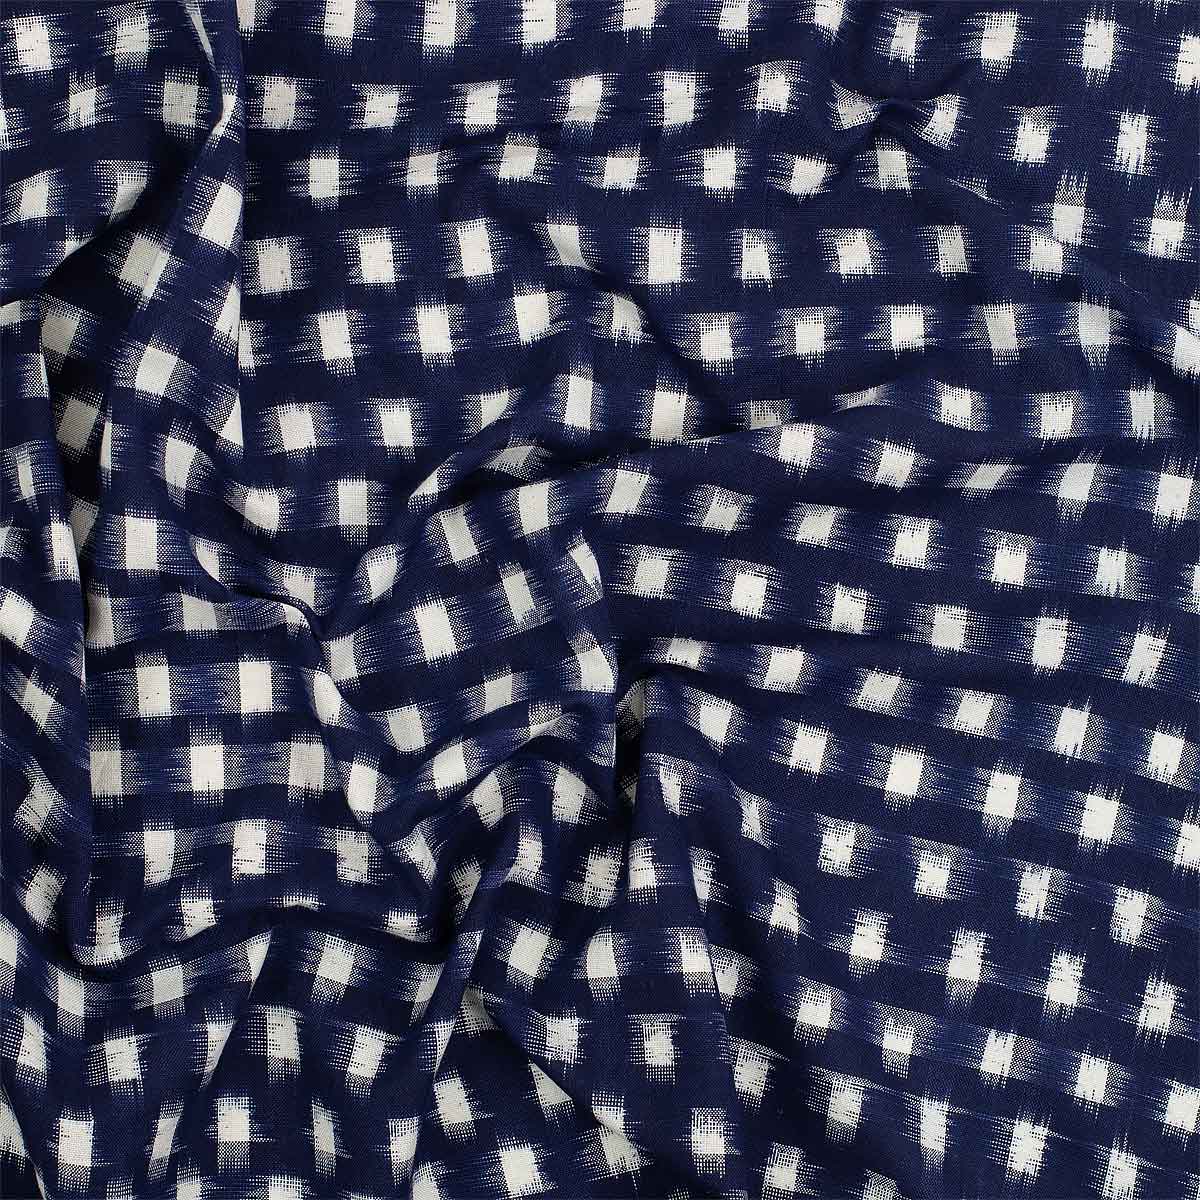 IKAT SQUARE Fabric, blue/white